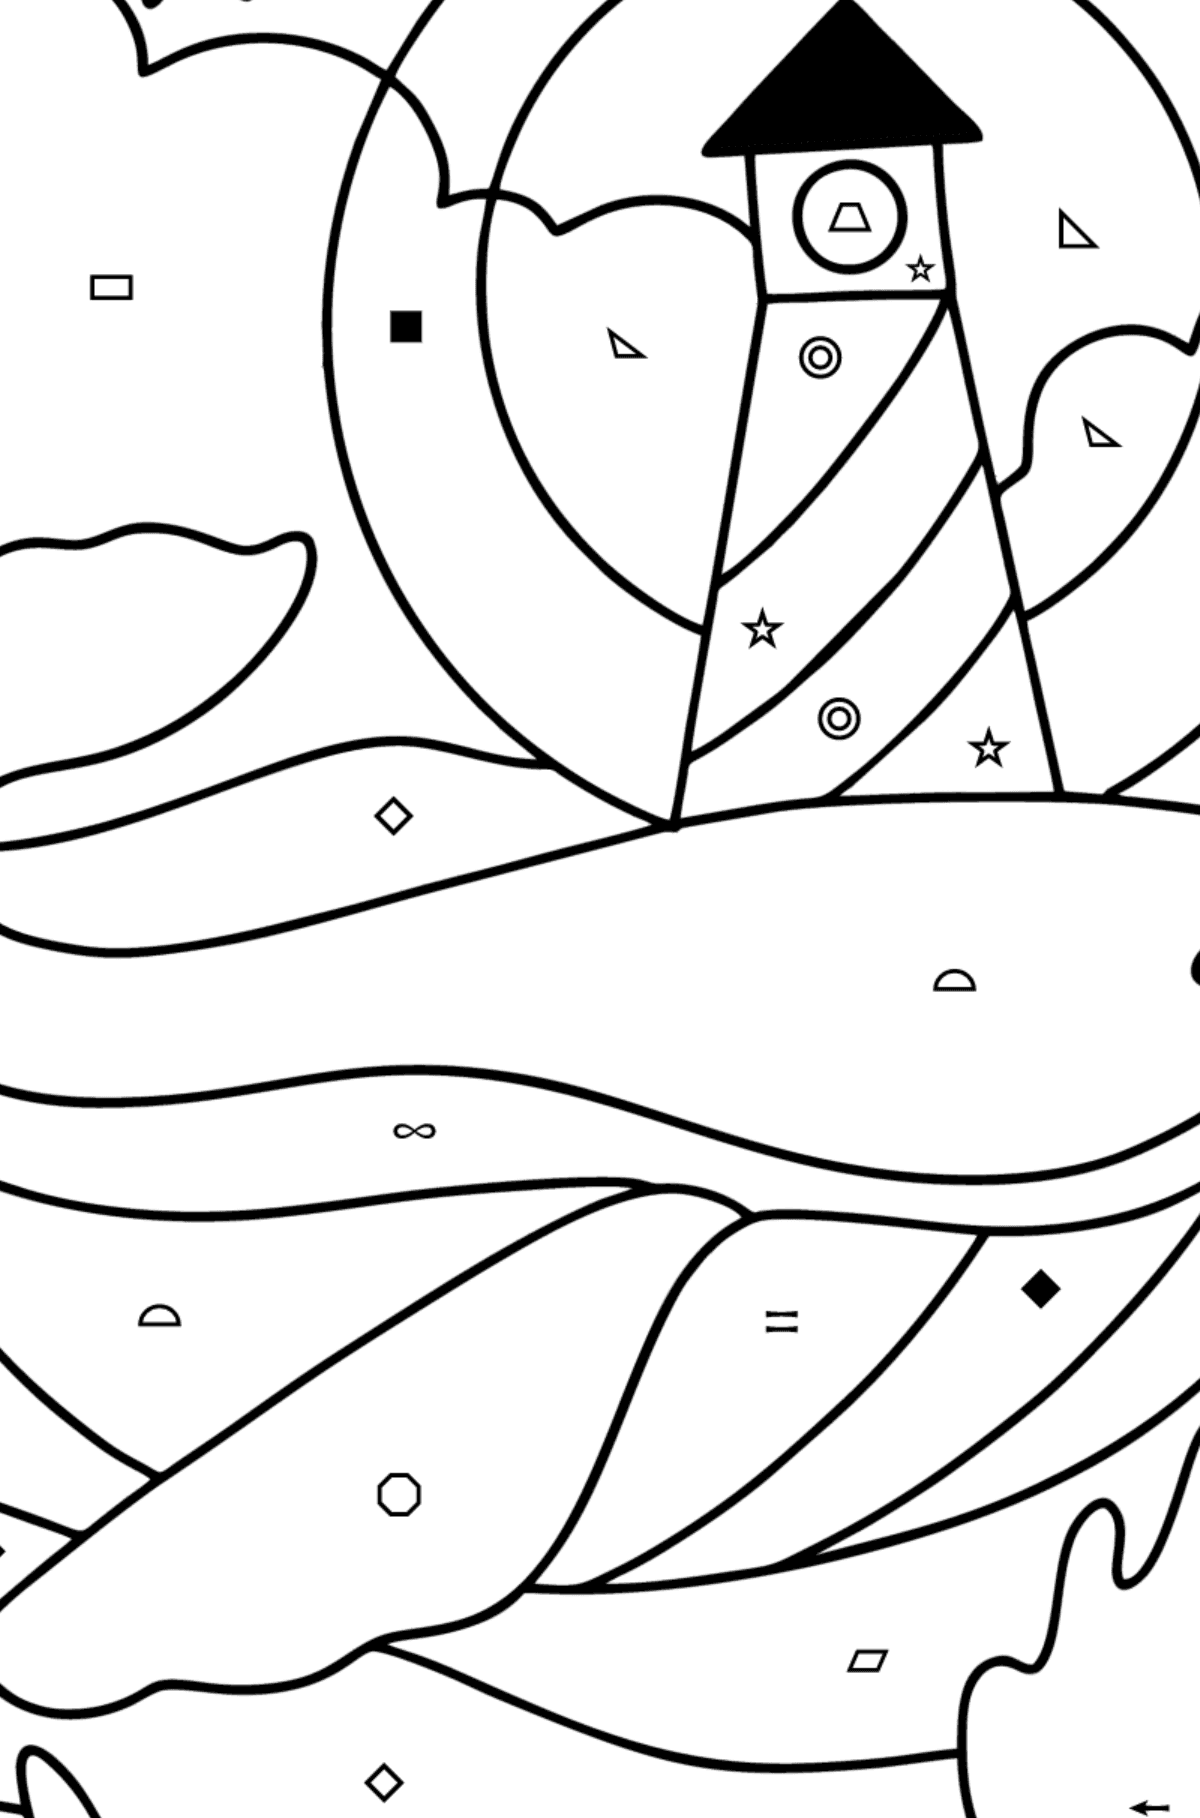 Kolorowanka wieloryb z latarnią morską - Kolorowanie według symboli i figur geometrycznych dla dzieci